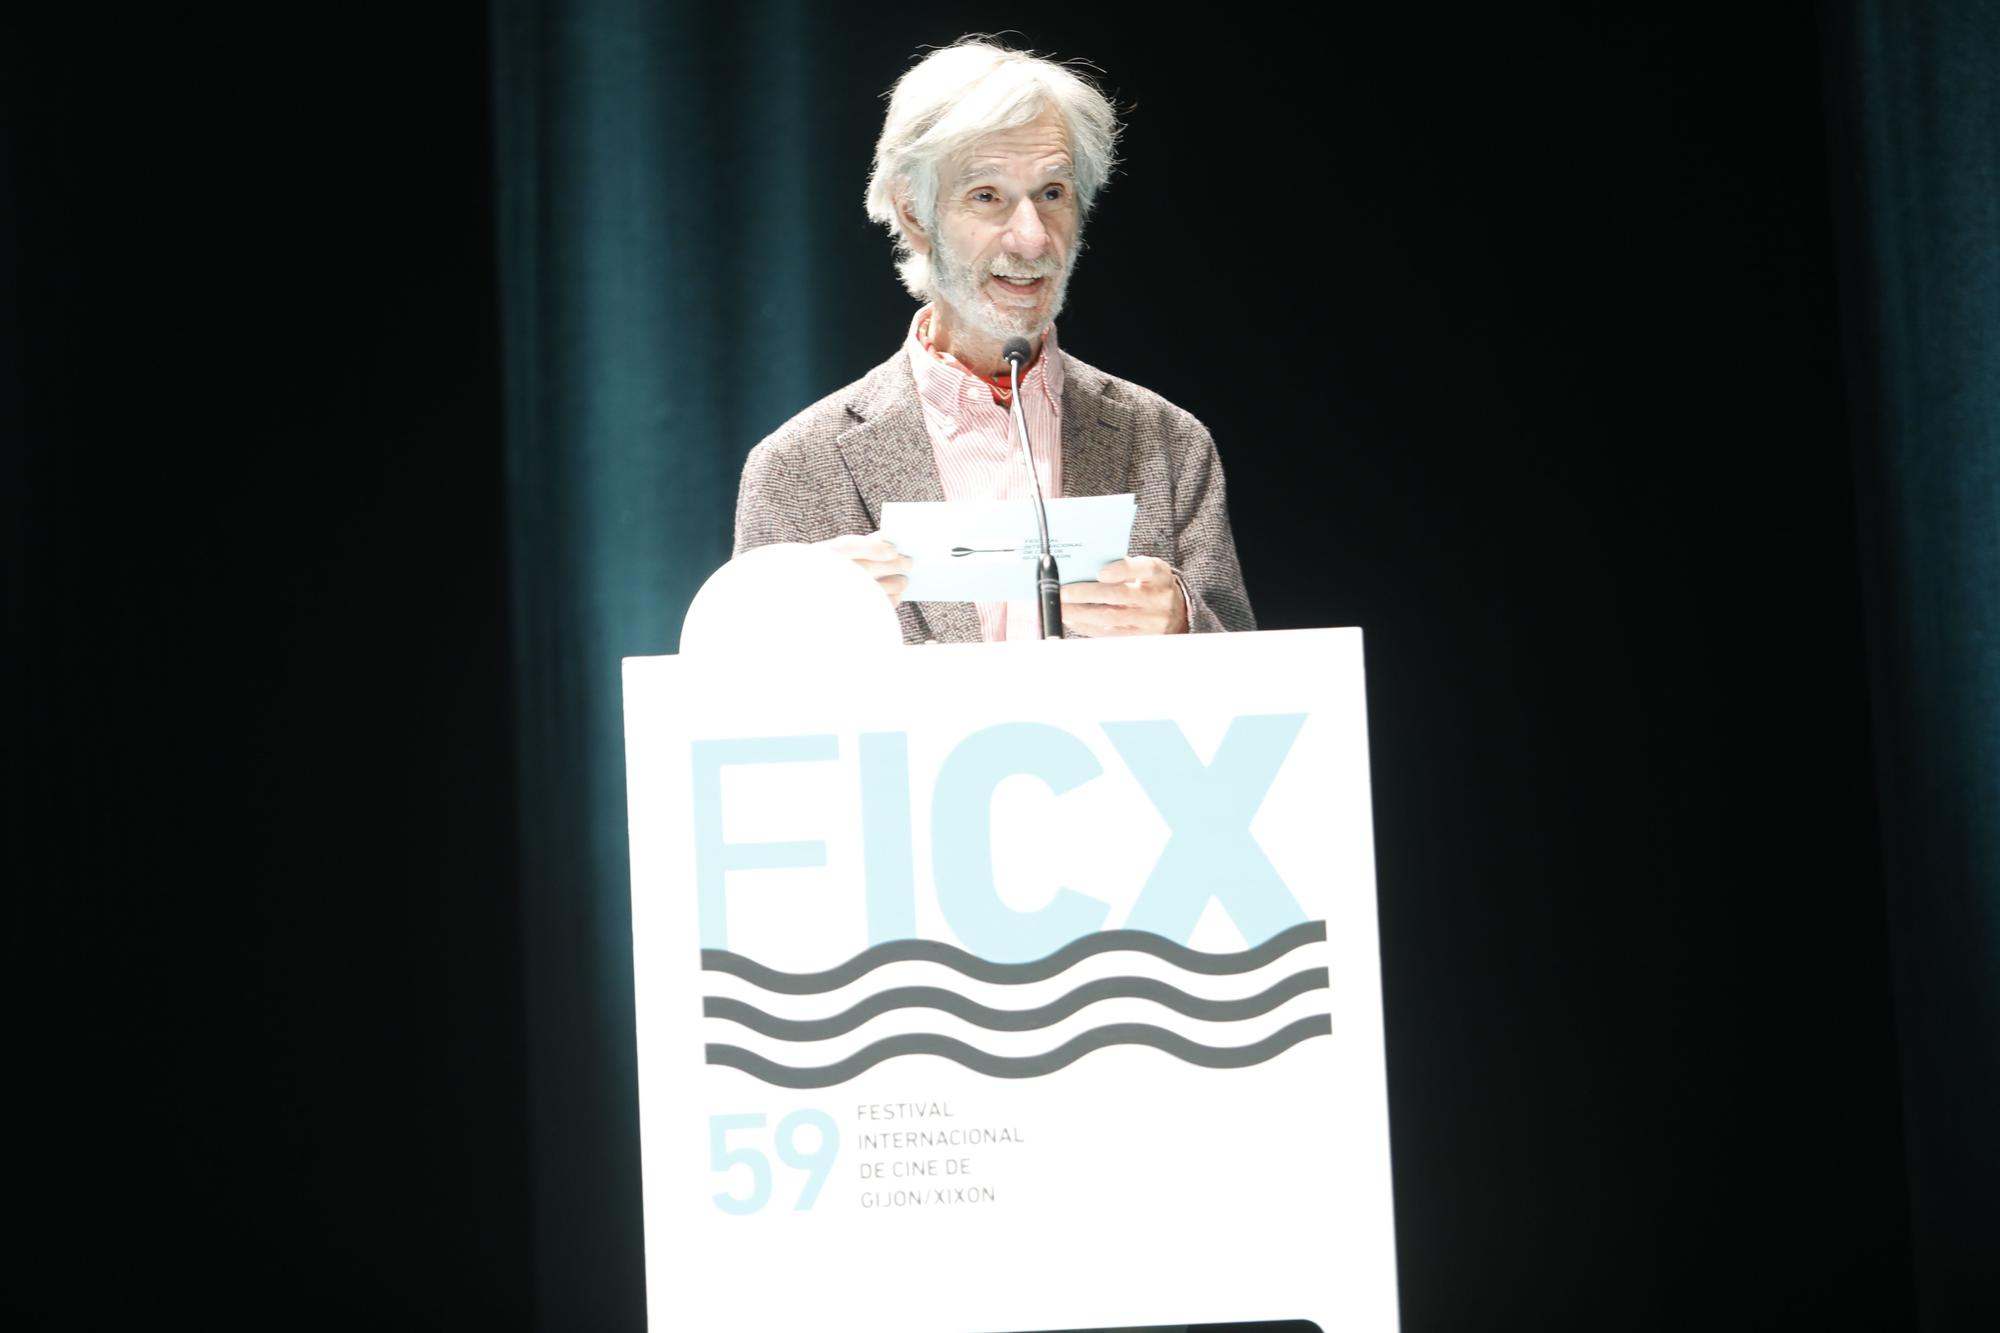 Galería: la entrega de premios del FICX, en imágenes